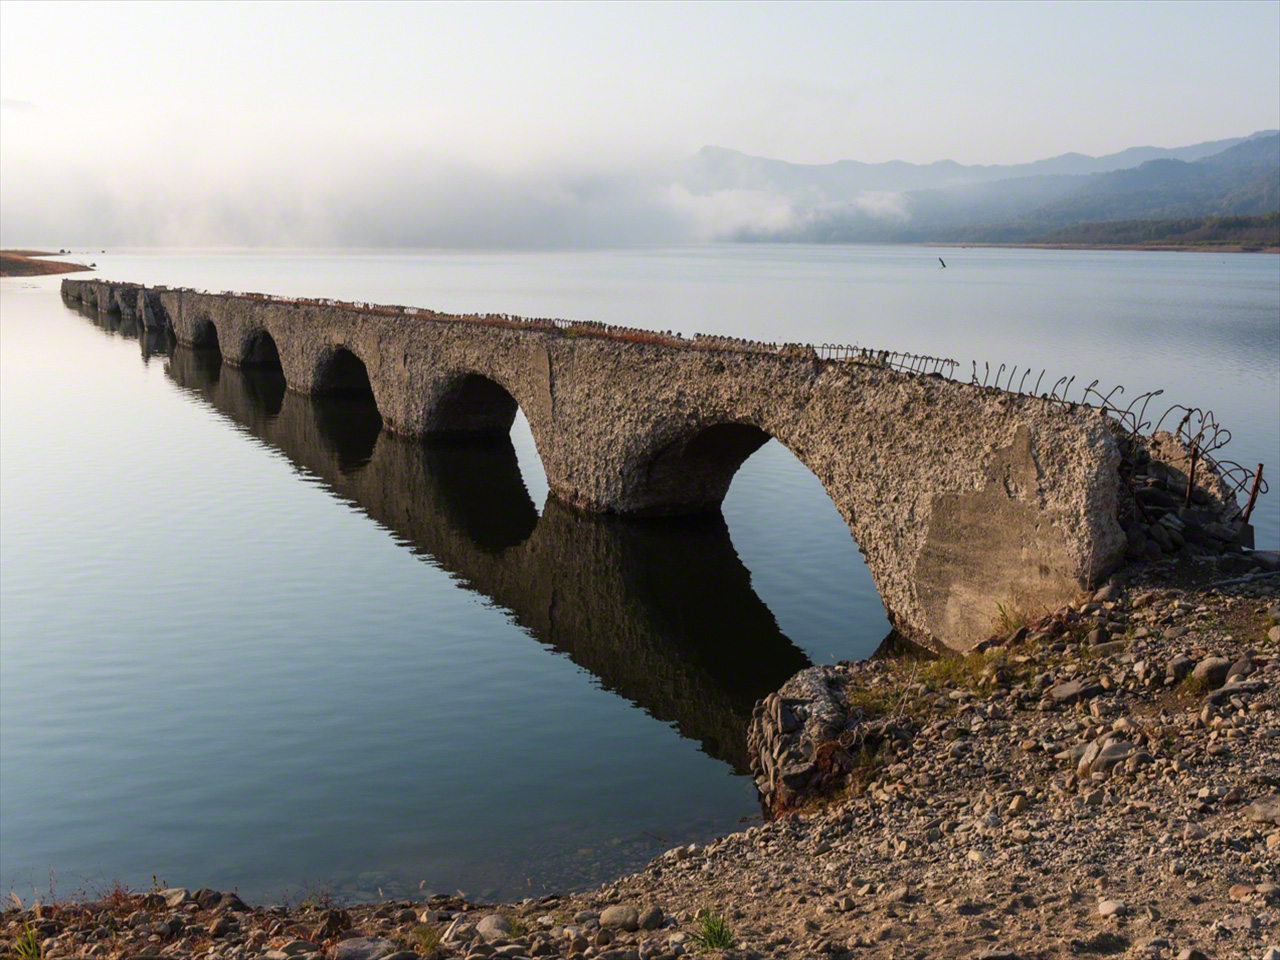 مع ارتفاع مستوى البحيرة مع اقتراب فصل الشتاء، تغمر المياه حوالي 70٪ من الجسر بحلول شهر أكتوبر/ تشرين الأول.